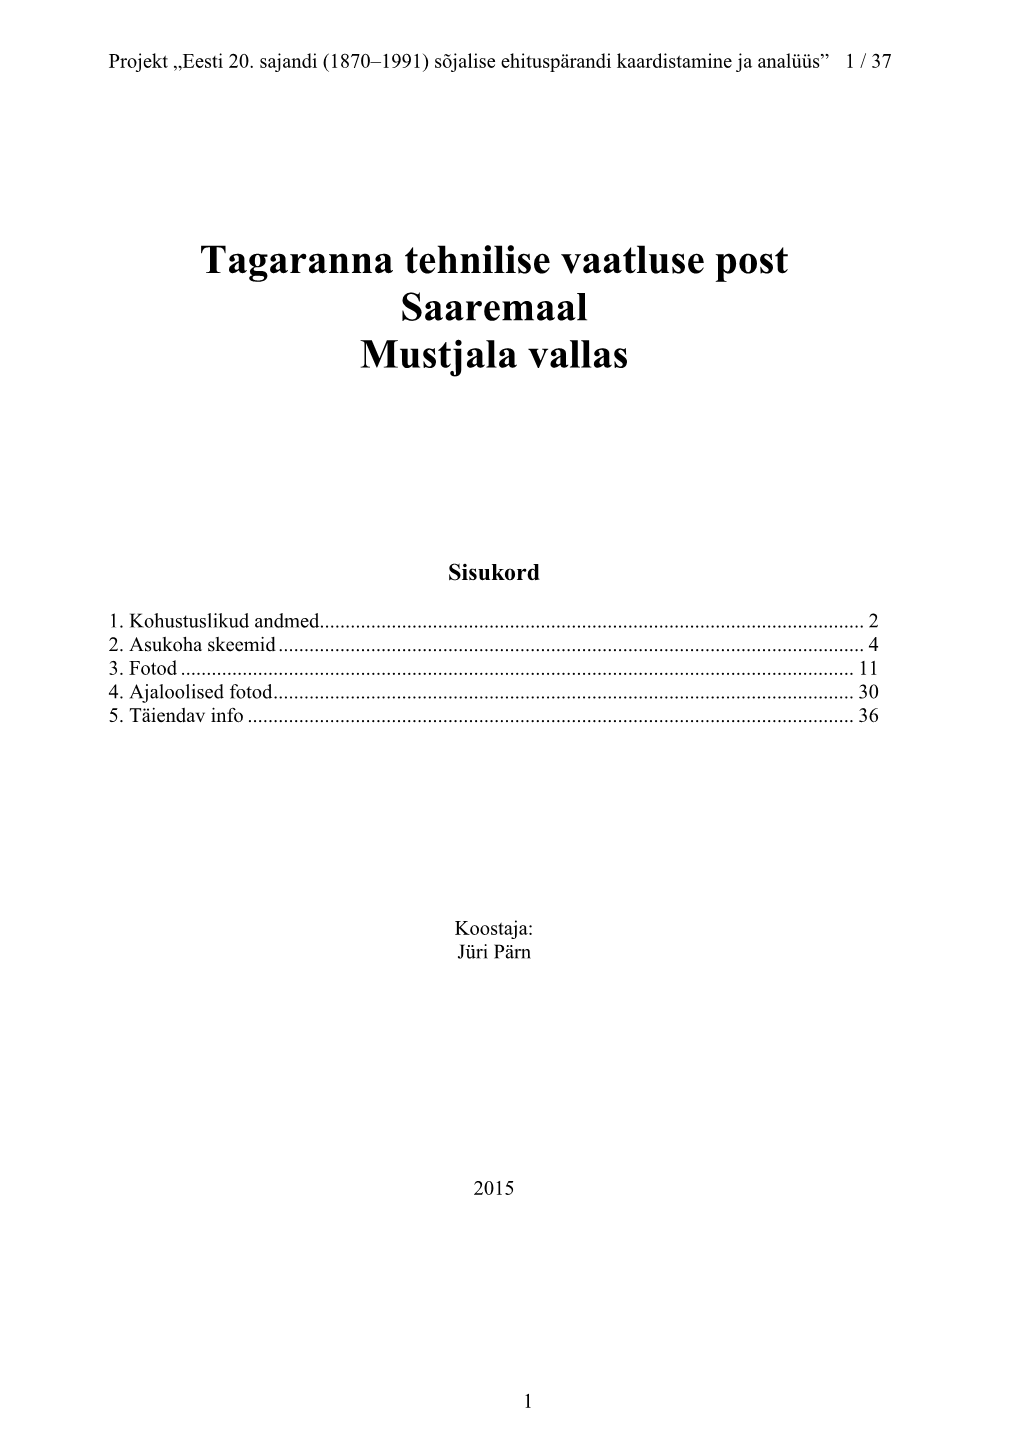 Tagaranna Tehnilise Vaatluse Post Saaremaal Mustjala Vallas